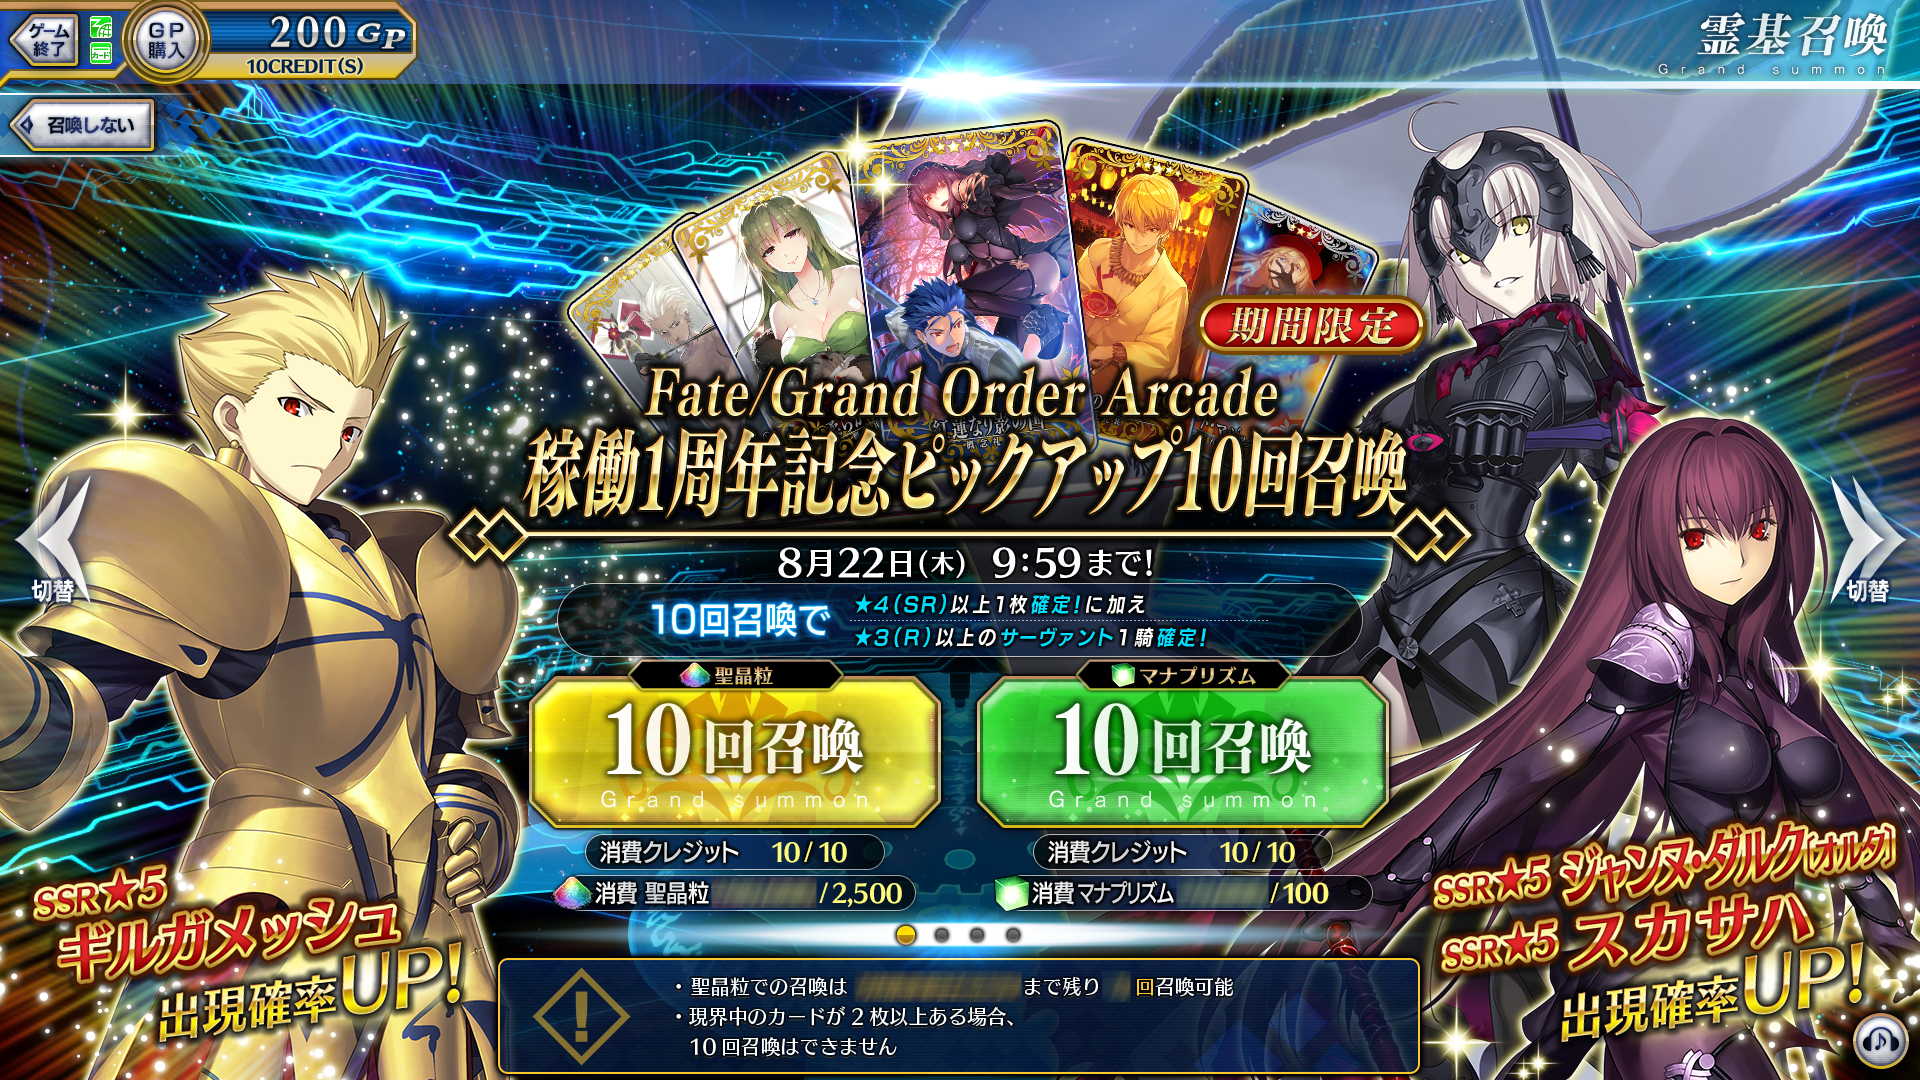 終了 Fate Grand Order Arcade 稼働1周年記念ピックアップ召喚 公式 Fate Grand Order Arcade